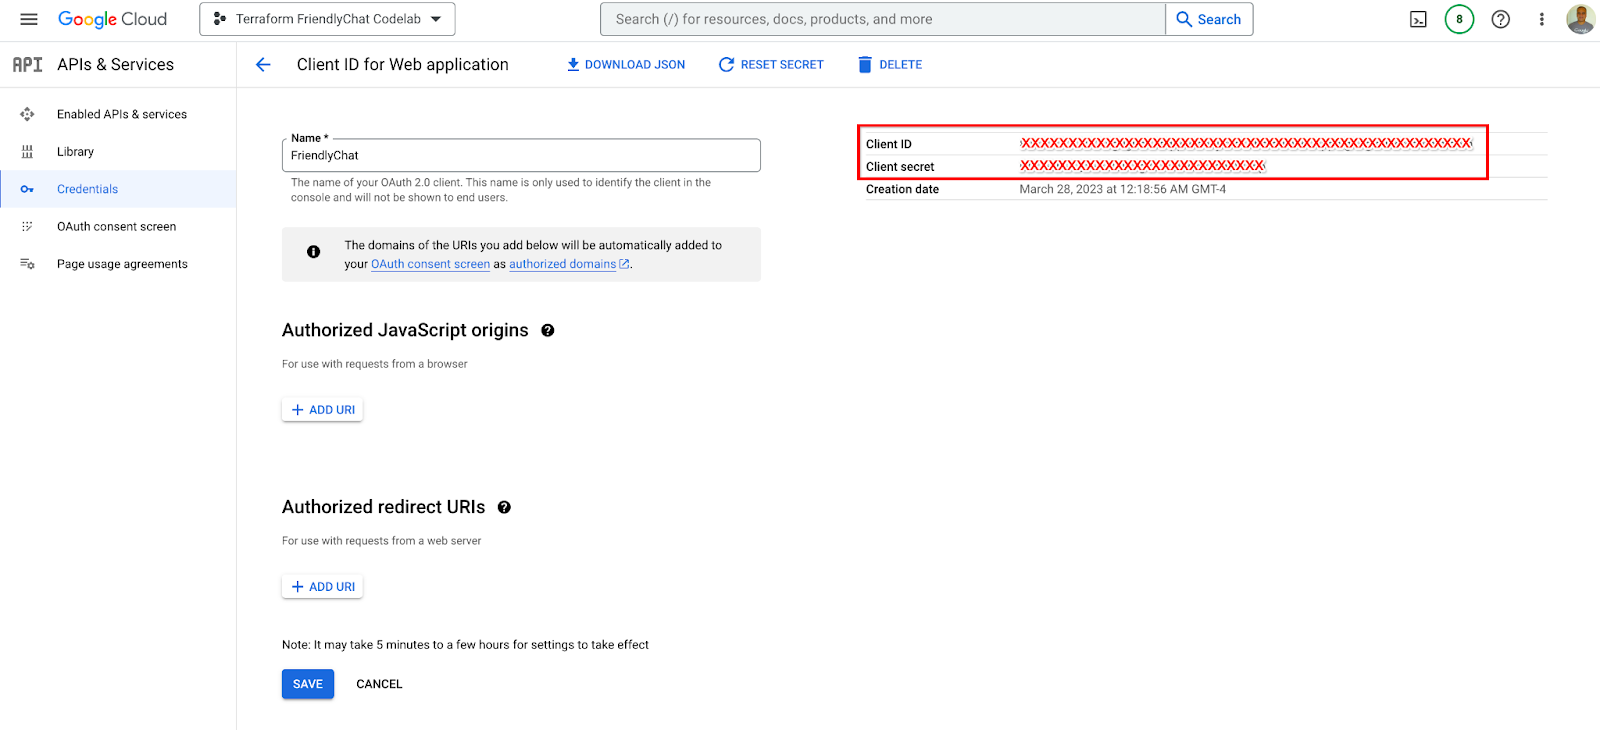 Google Cloud 콘솔 사용자 인증 정보 페이지에서 OAuth2 클라이언트 ID 및 보안 비밀 가져오기